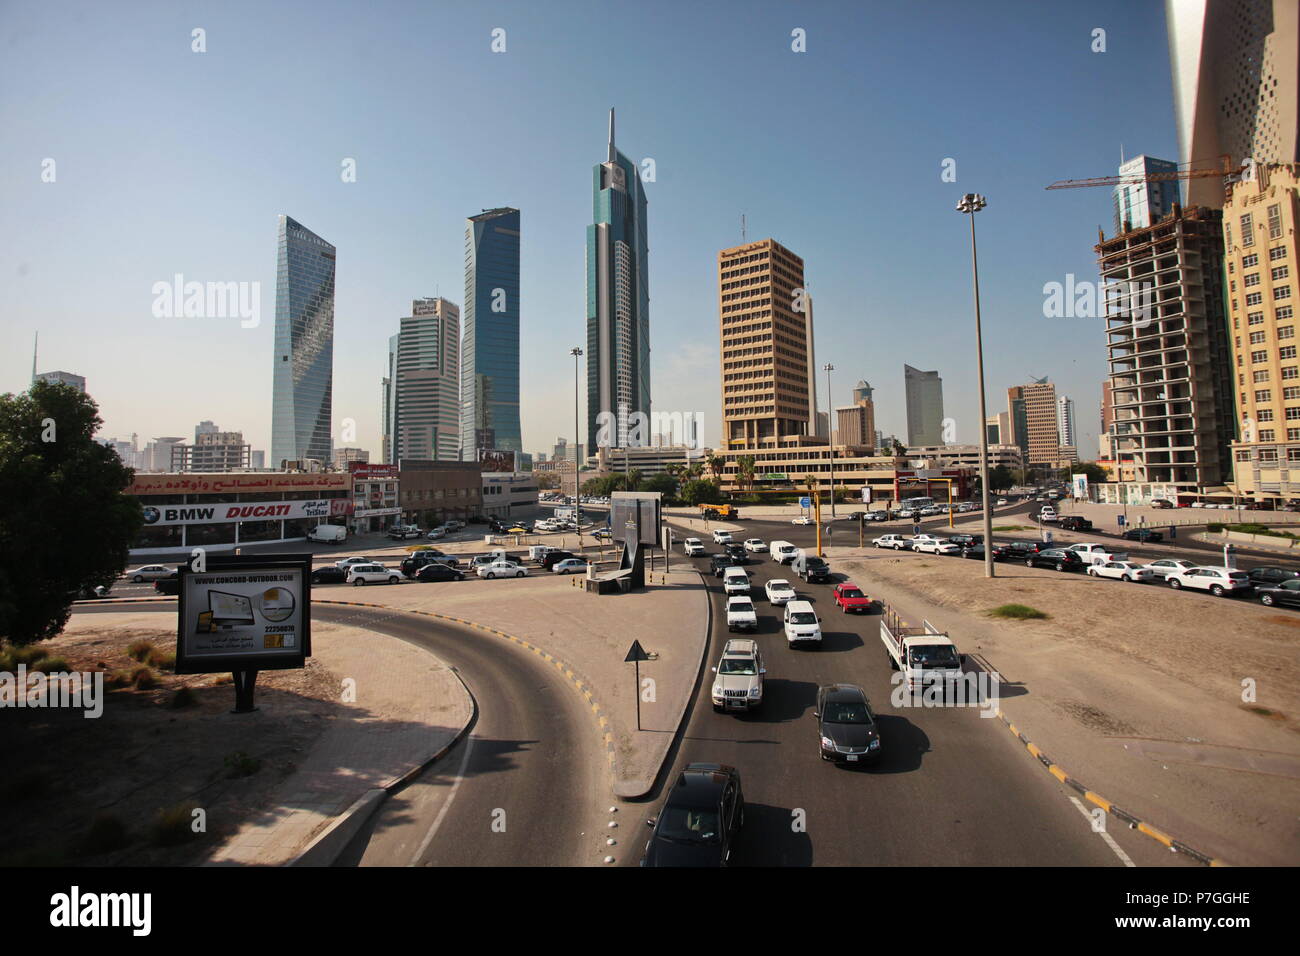 La ville de Koweït, Koweït - 12 novembre 2013 : l'horizon de la ville de Koweït, Moyen-Orient Banque D'Images